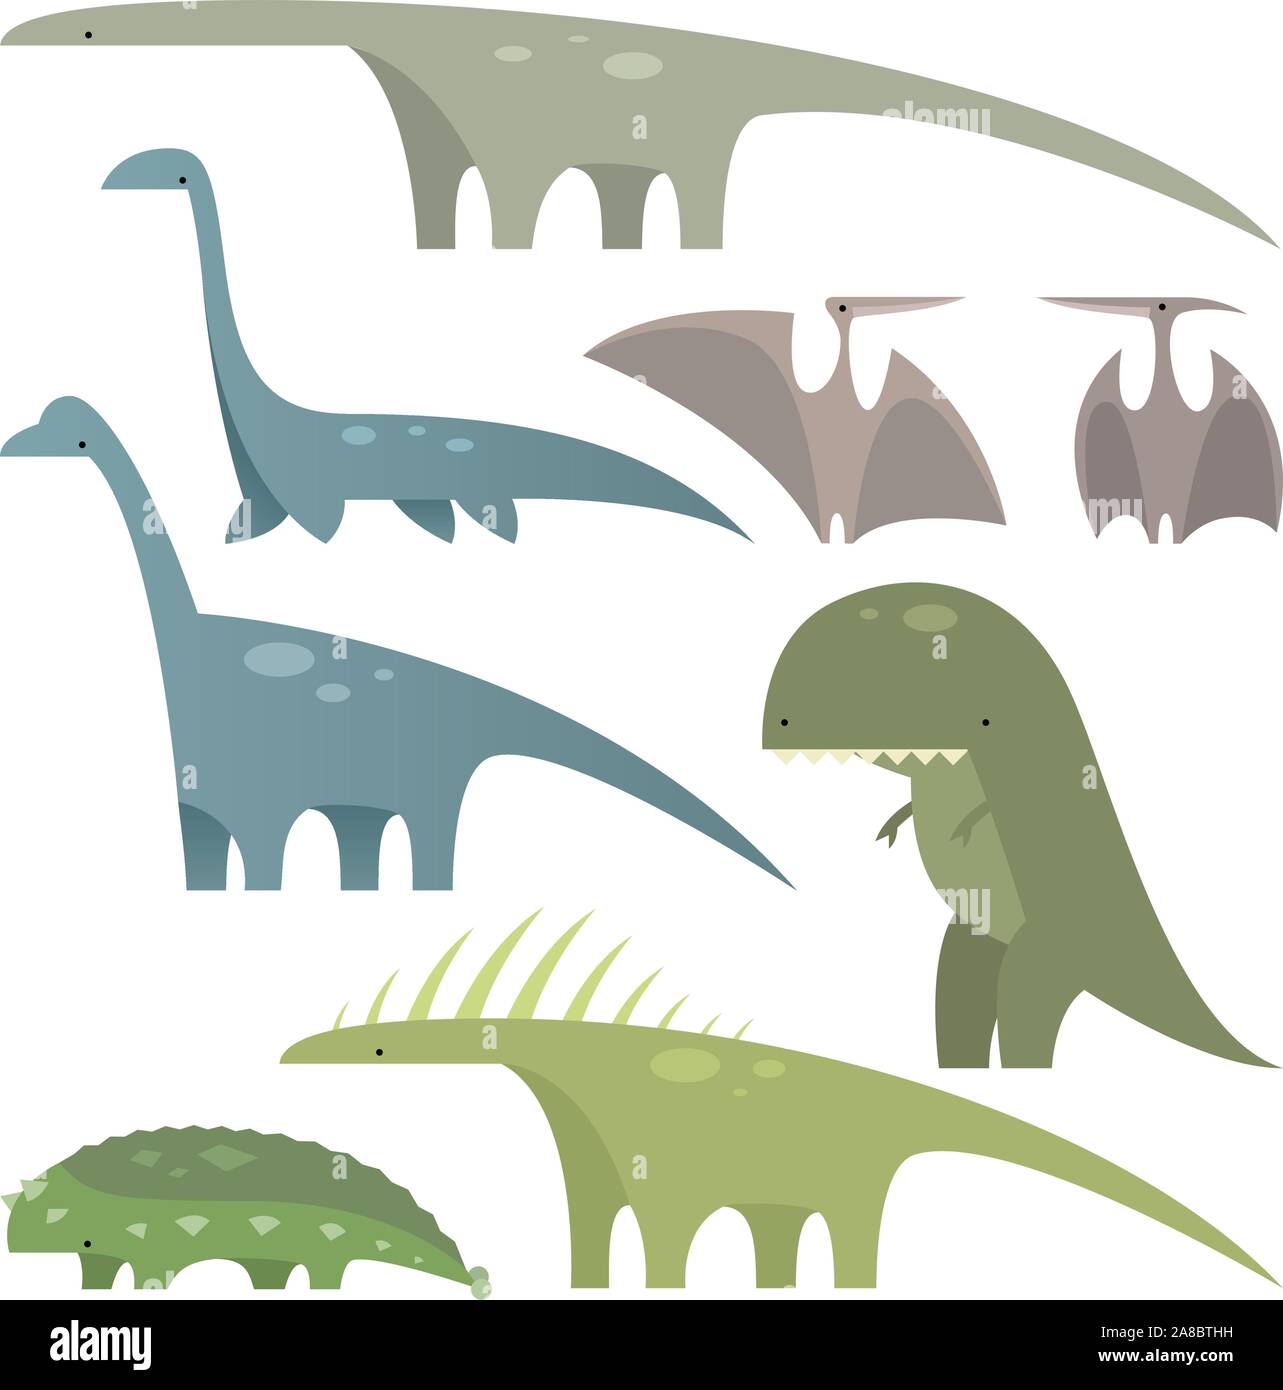 Préhistoire dinosaures du Jurassique set 1, avec huit différents dinosaures dans différentes tailles et formes d'illustration vectorielle. Illustration de Vecteur